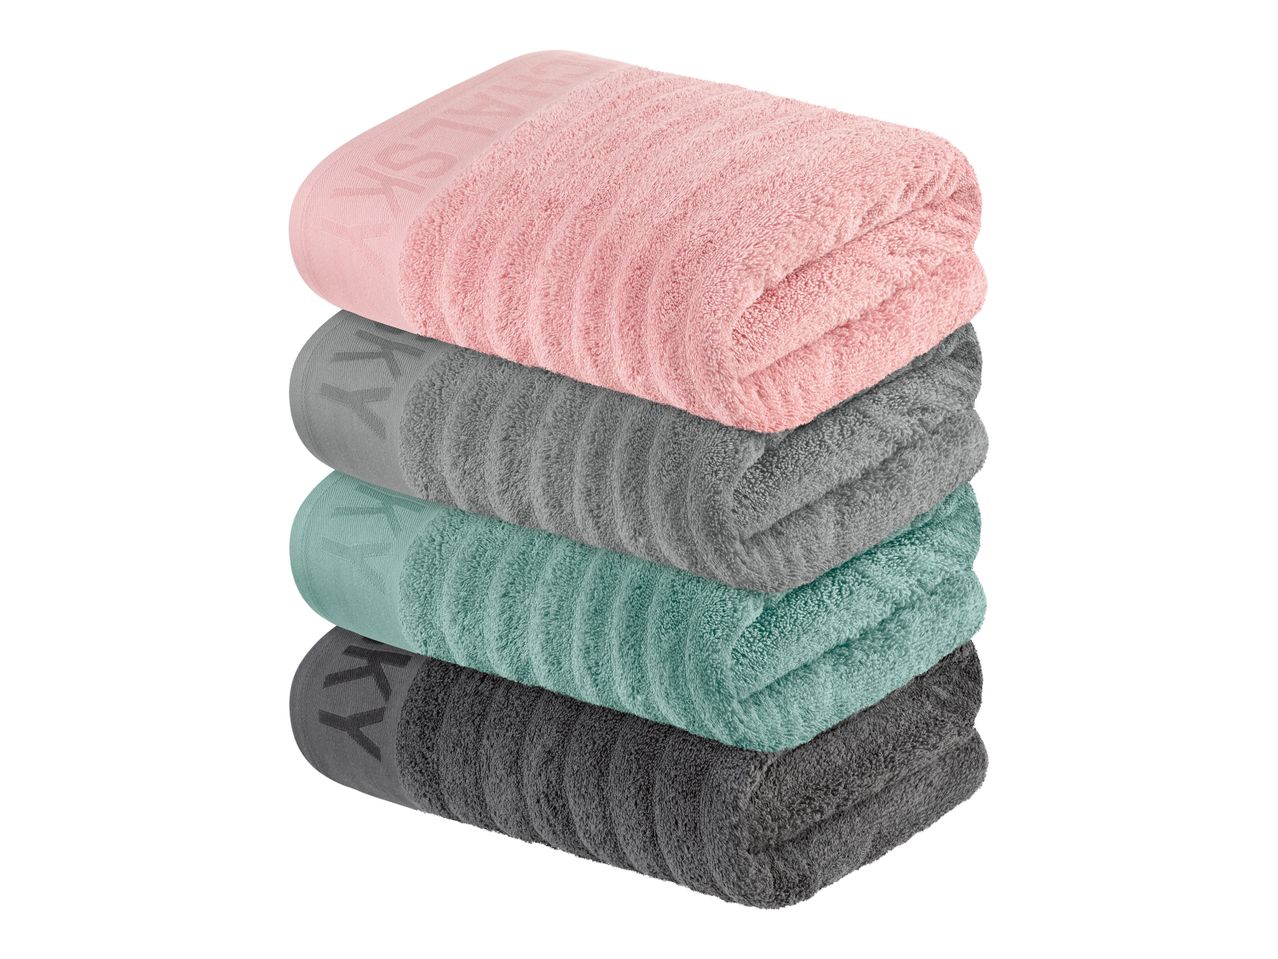 Asciugamano , prezzo 12.99 EUR  
Asciugamano  70 x 140 cm  
-  Puro cotone